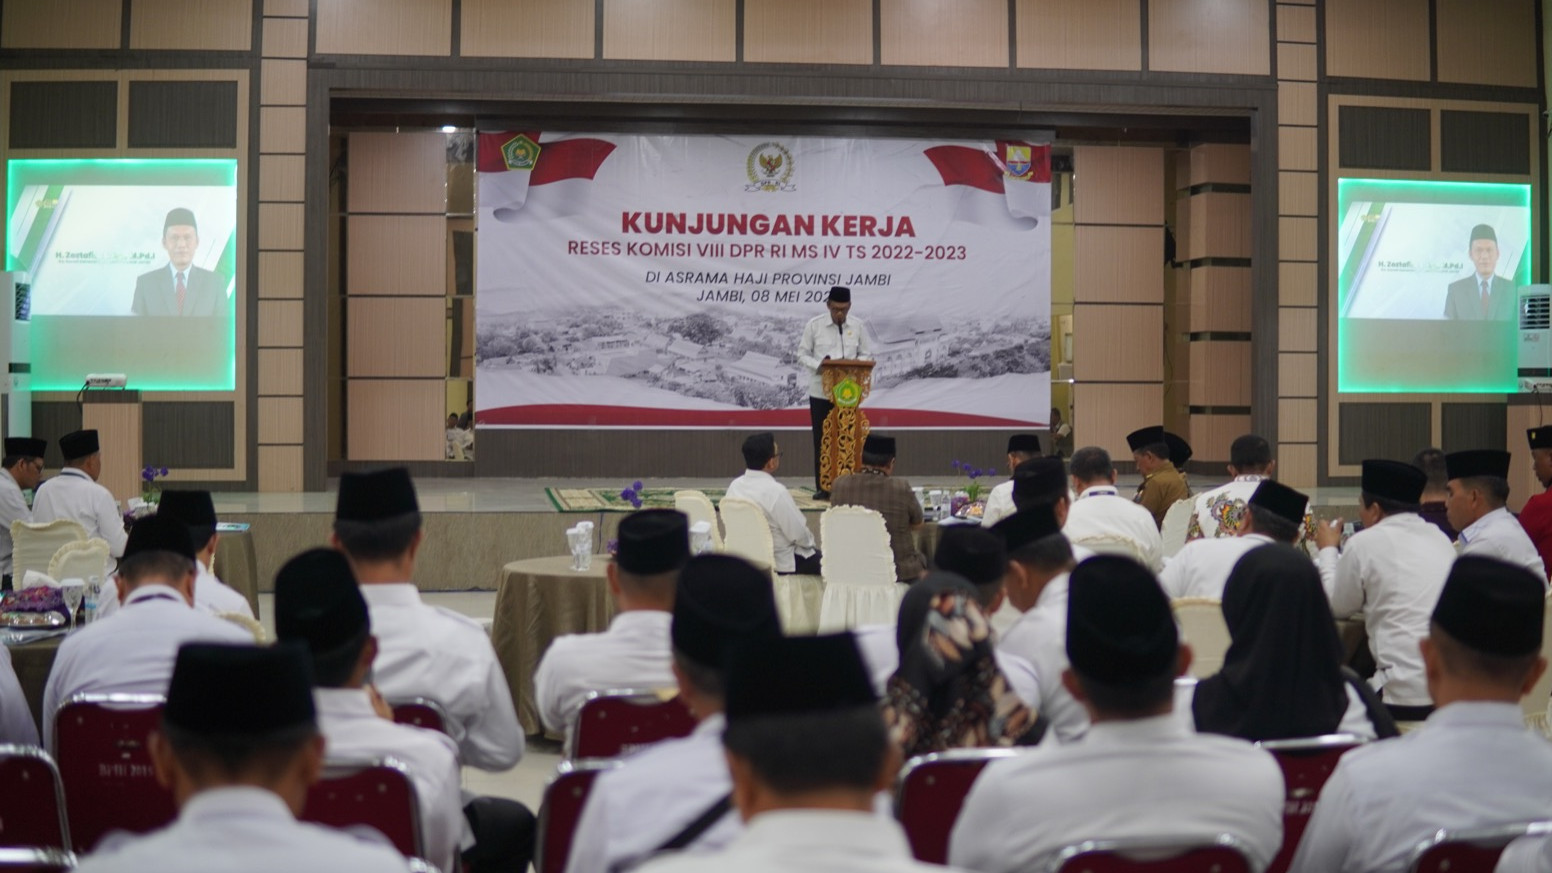 Kunjungan Komisi VIII DPR RI ke Asrama Haji Kota Baru Jambi